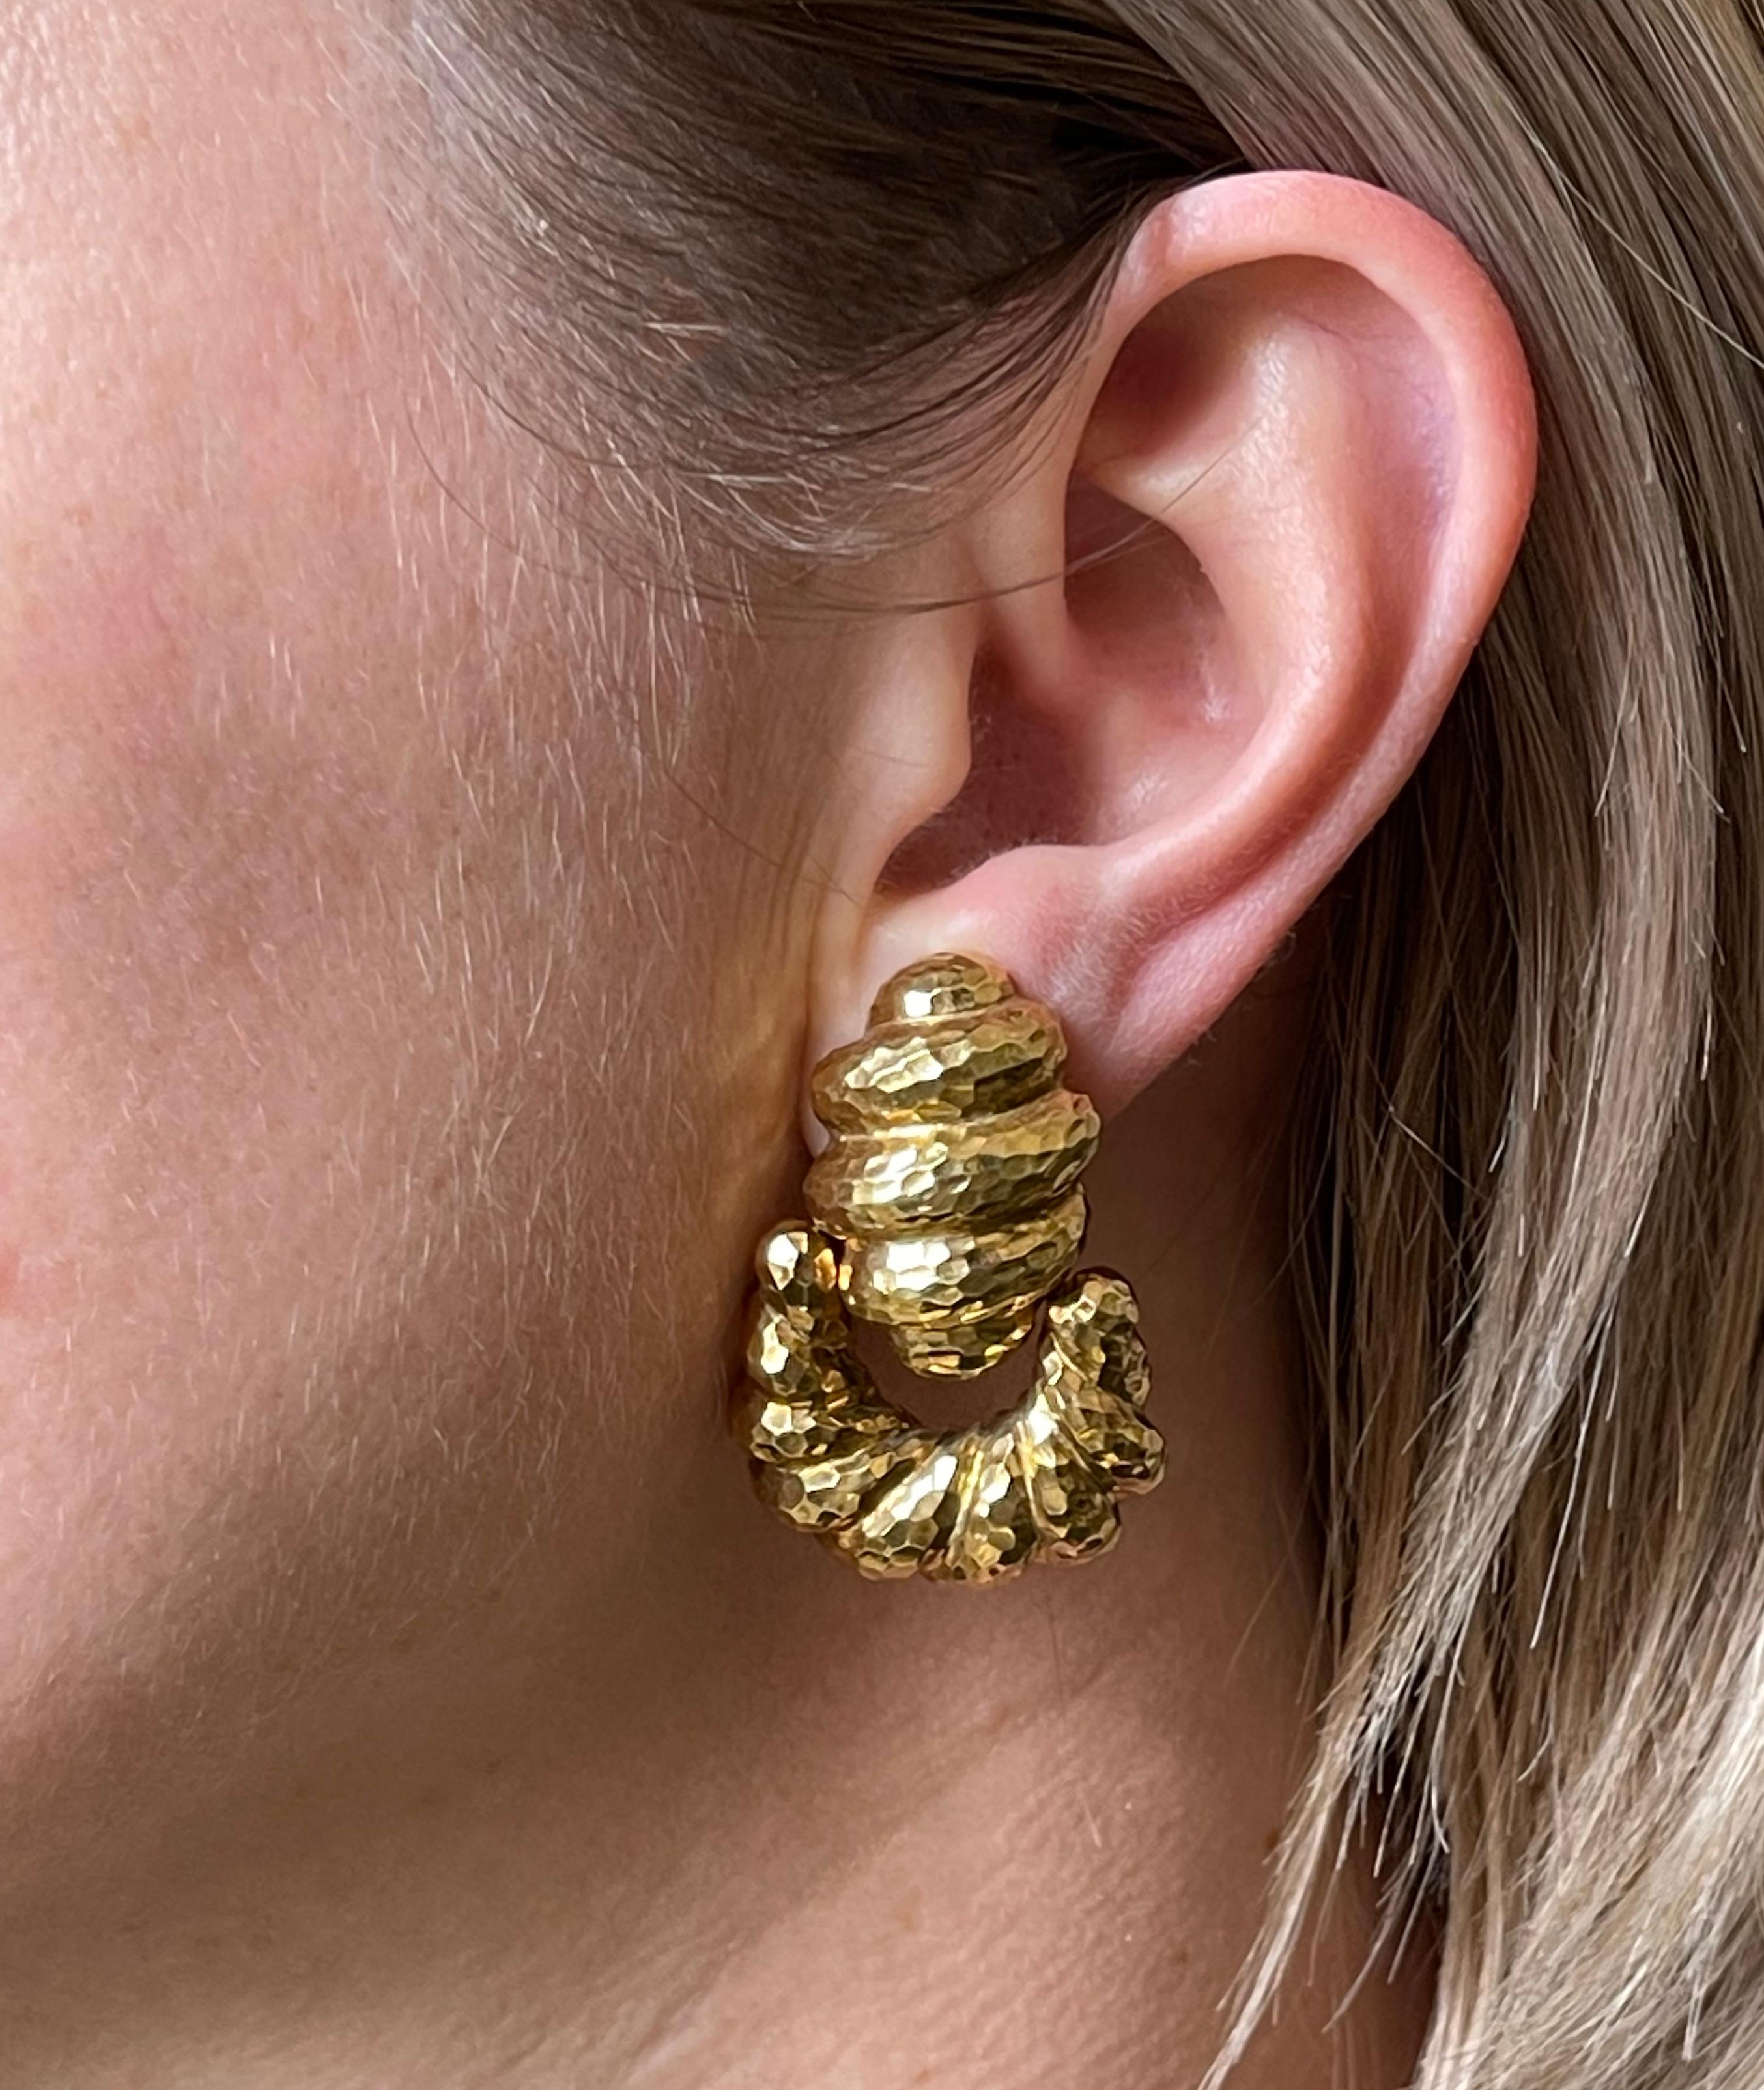 Pair of 18k hammered gold doorknocker earrings by David Webb. Earrings measure 1 5/8